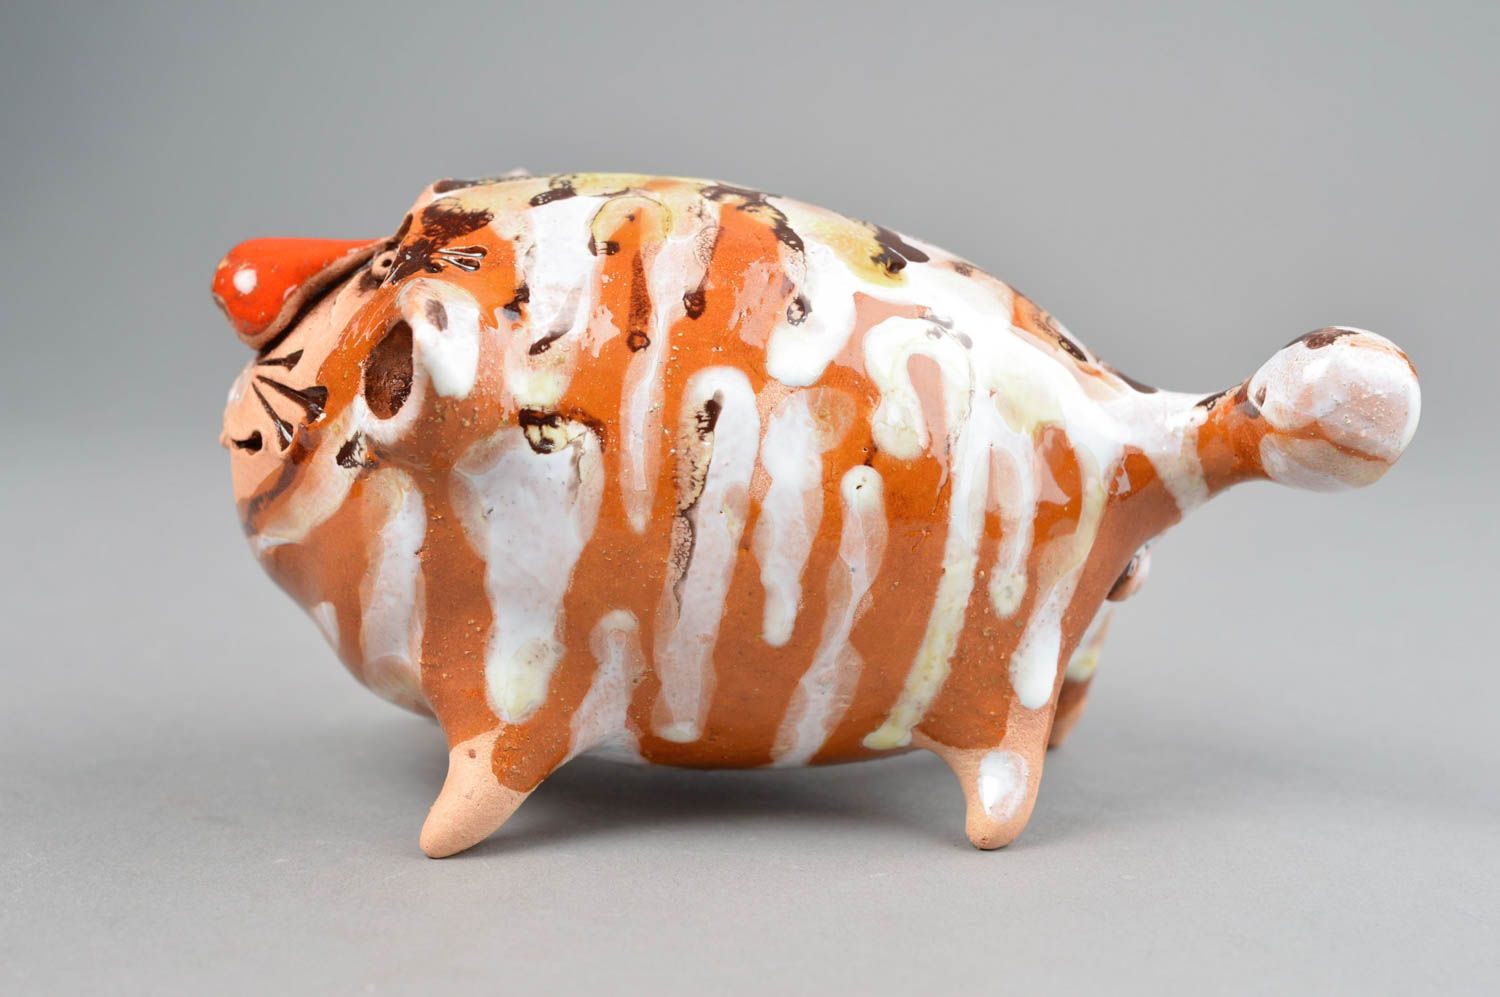 Ceramic animals handmade ceramic figurines cat decor presents for children photo 2